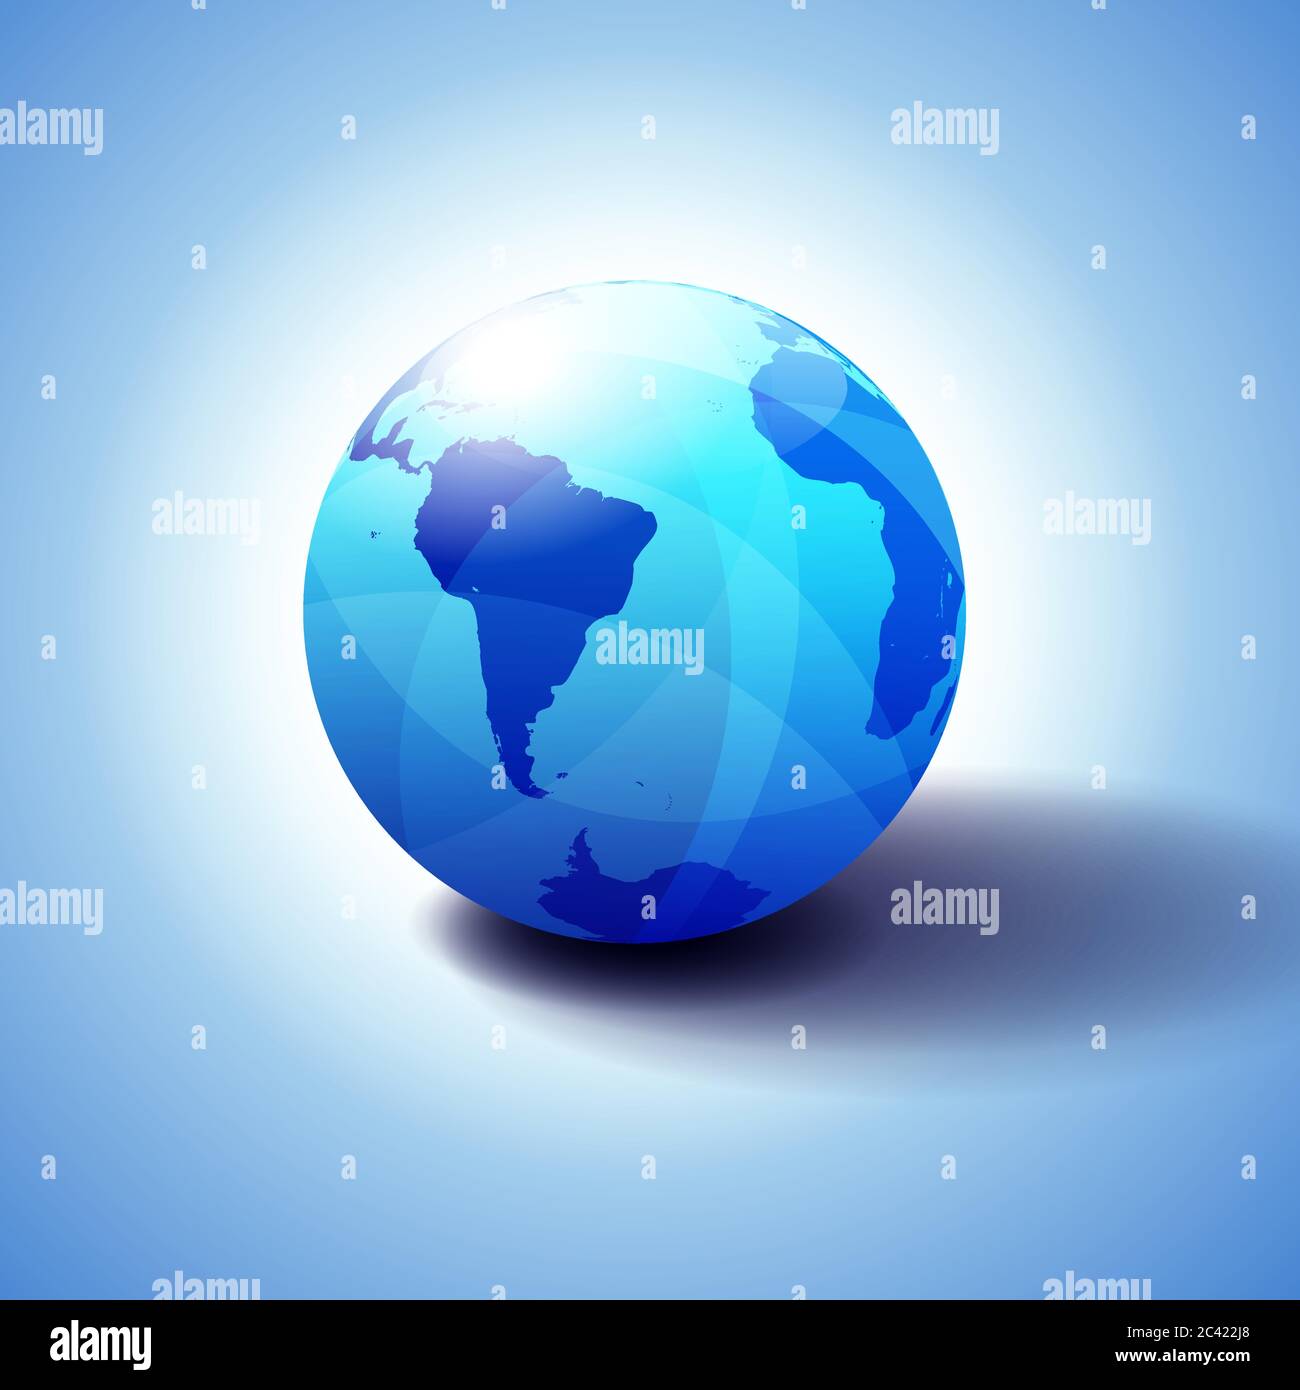 Illustration 3D de l'icône du globe terrestre mondial d'Amérique du Sud et d'Afrique, sphère brillante et brillante avec carte globale en bleu subtil, pour une impression de transparence Illustration de Vecteur